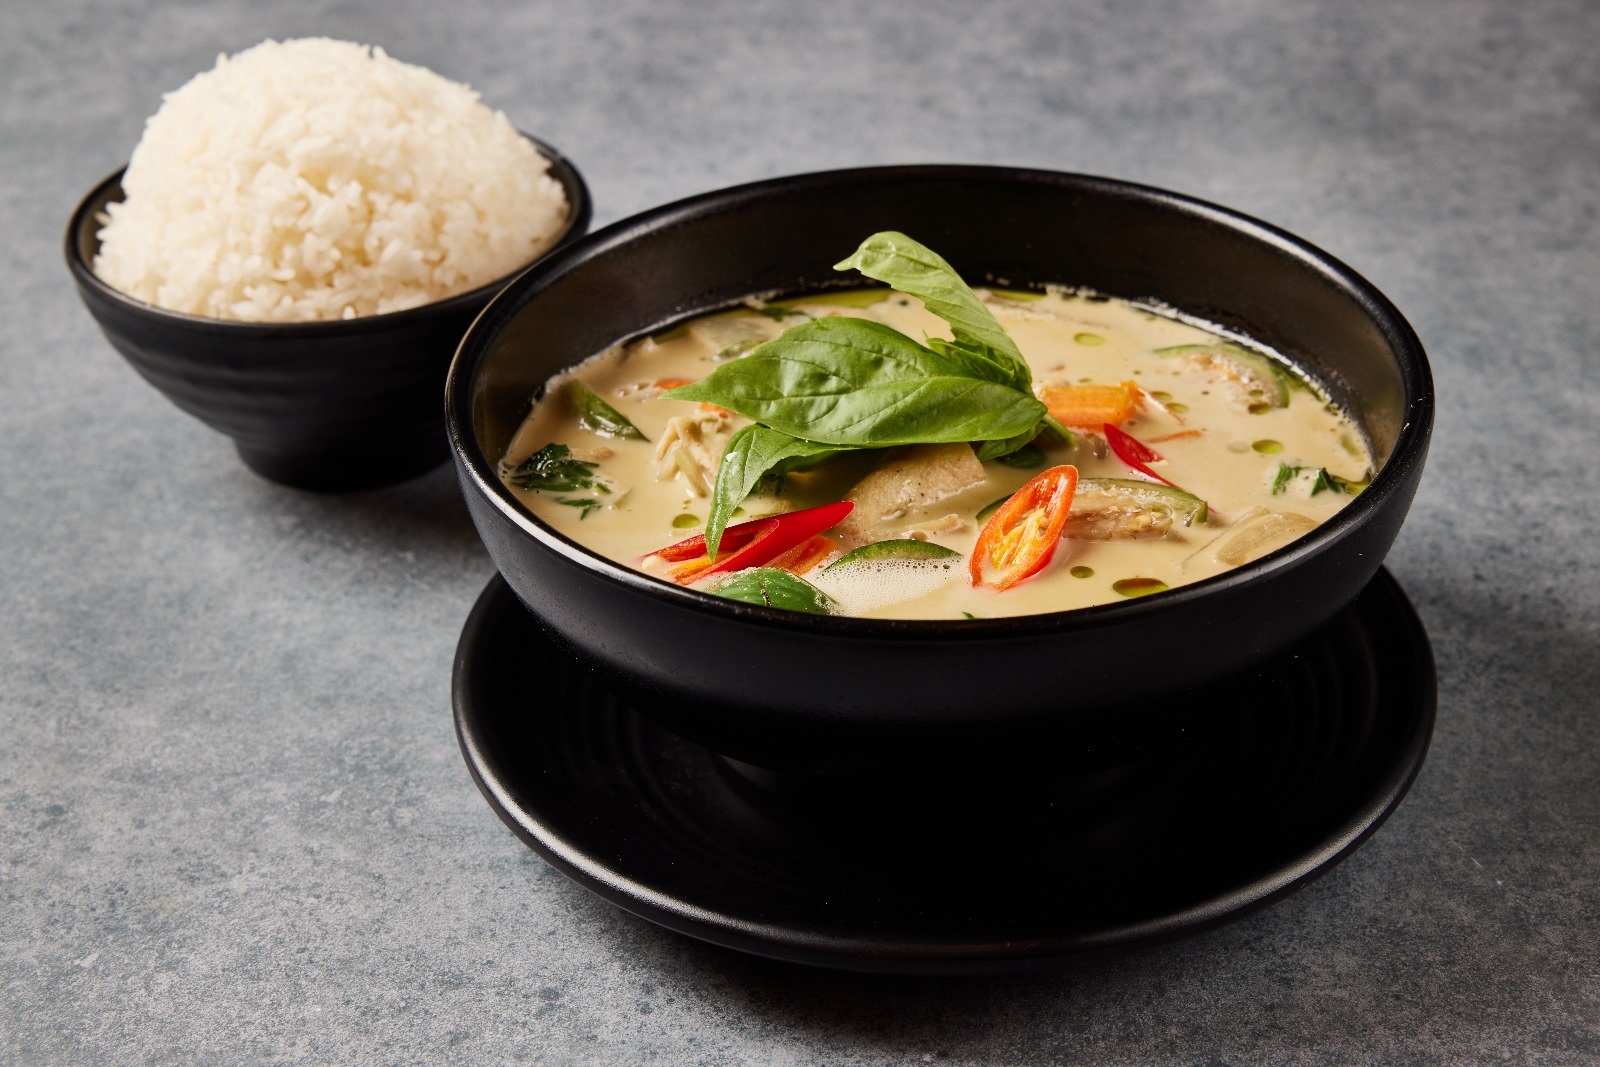 وجباتنا المفضلة من مطعم asia  t التايلاندي لهذا الأسبوع. تعال وجرّب